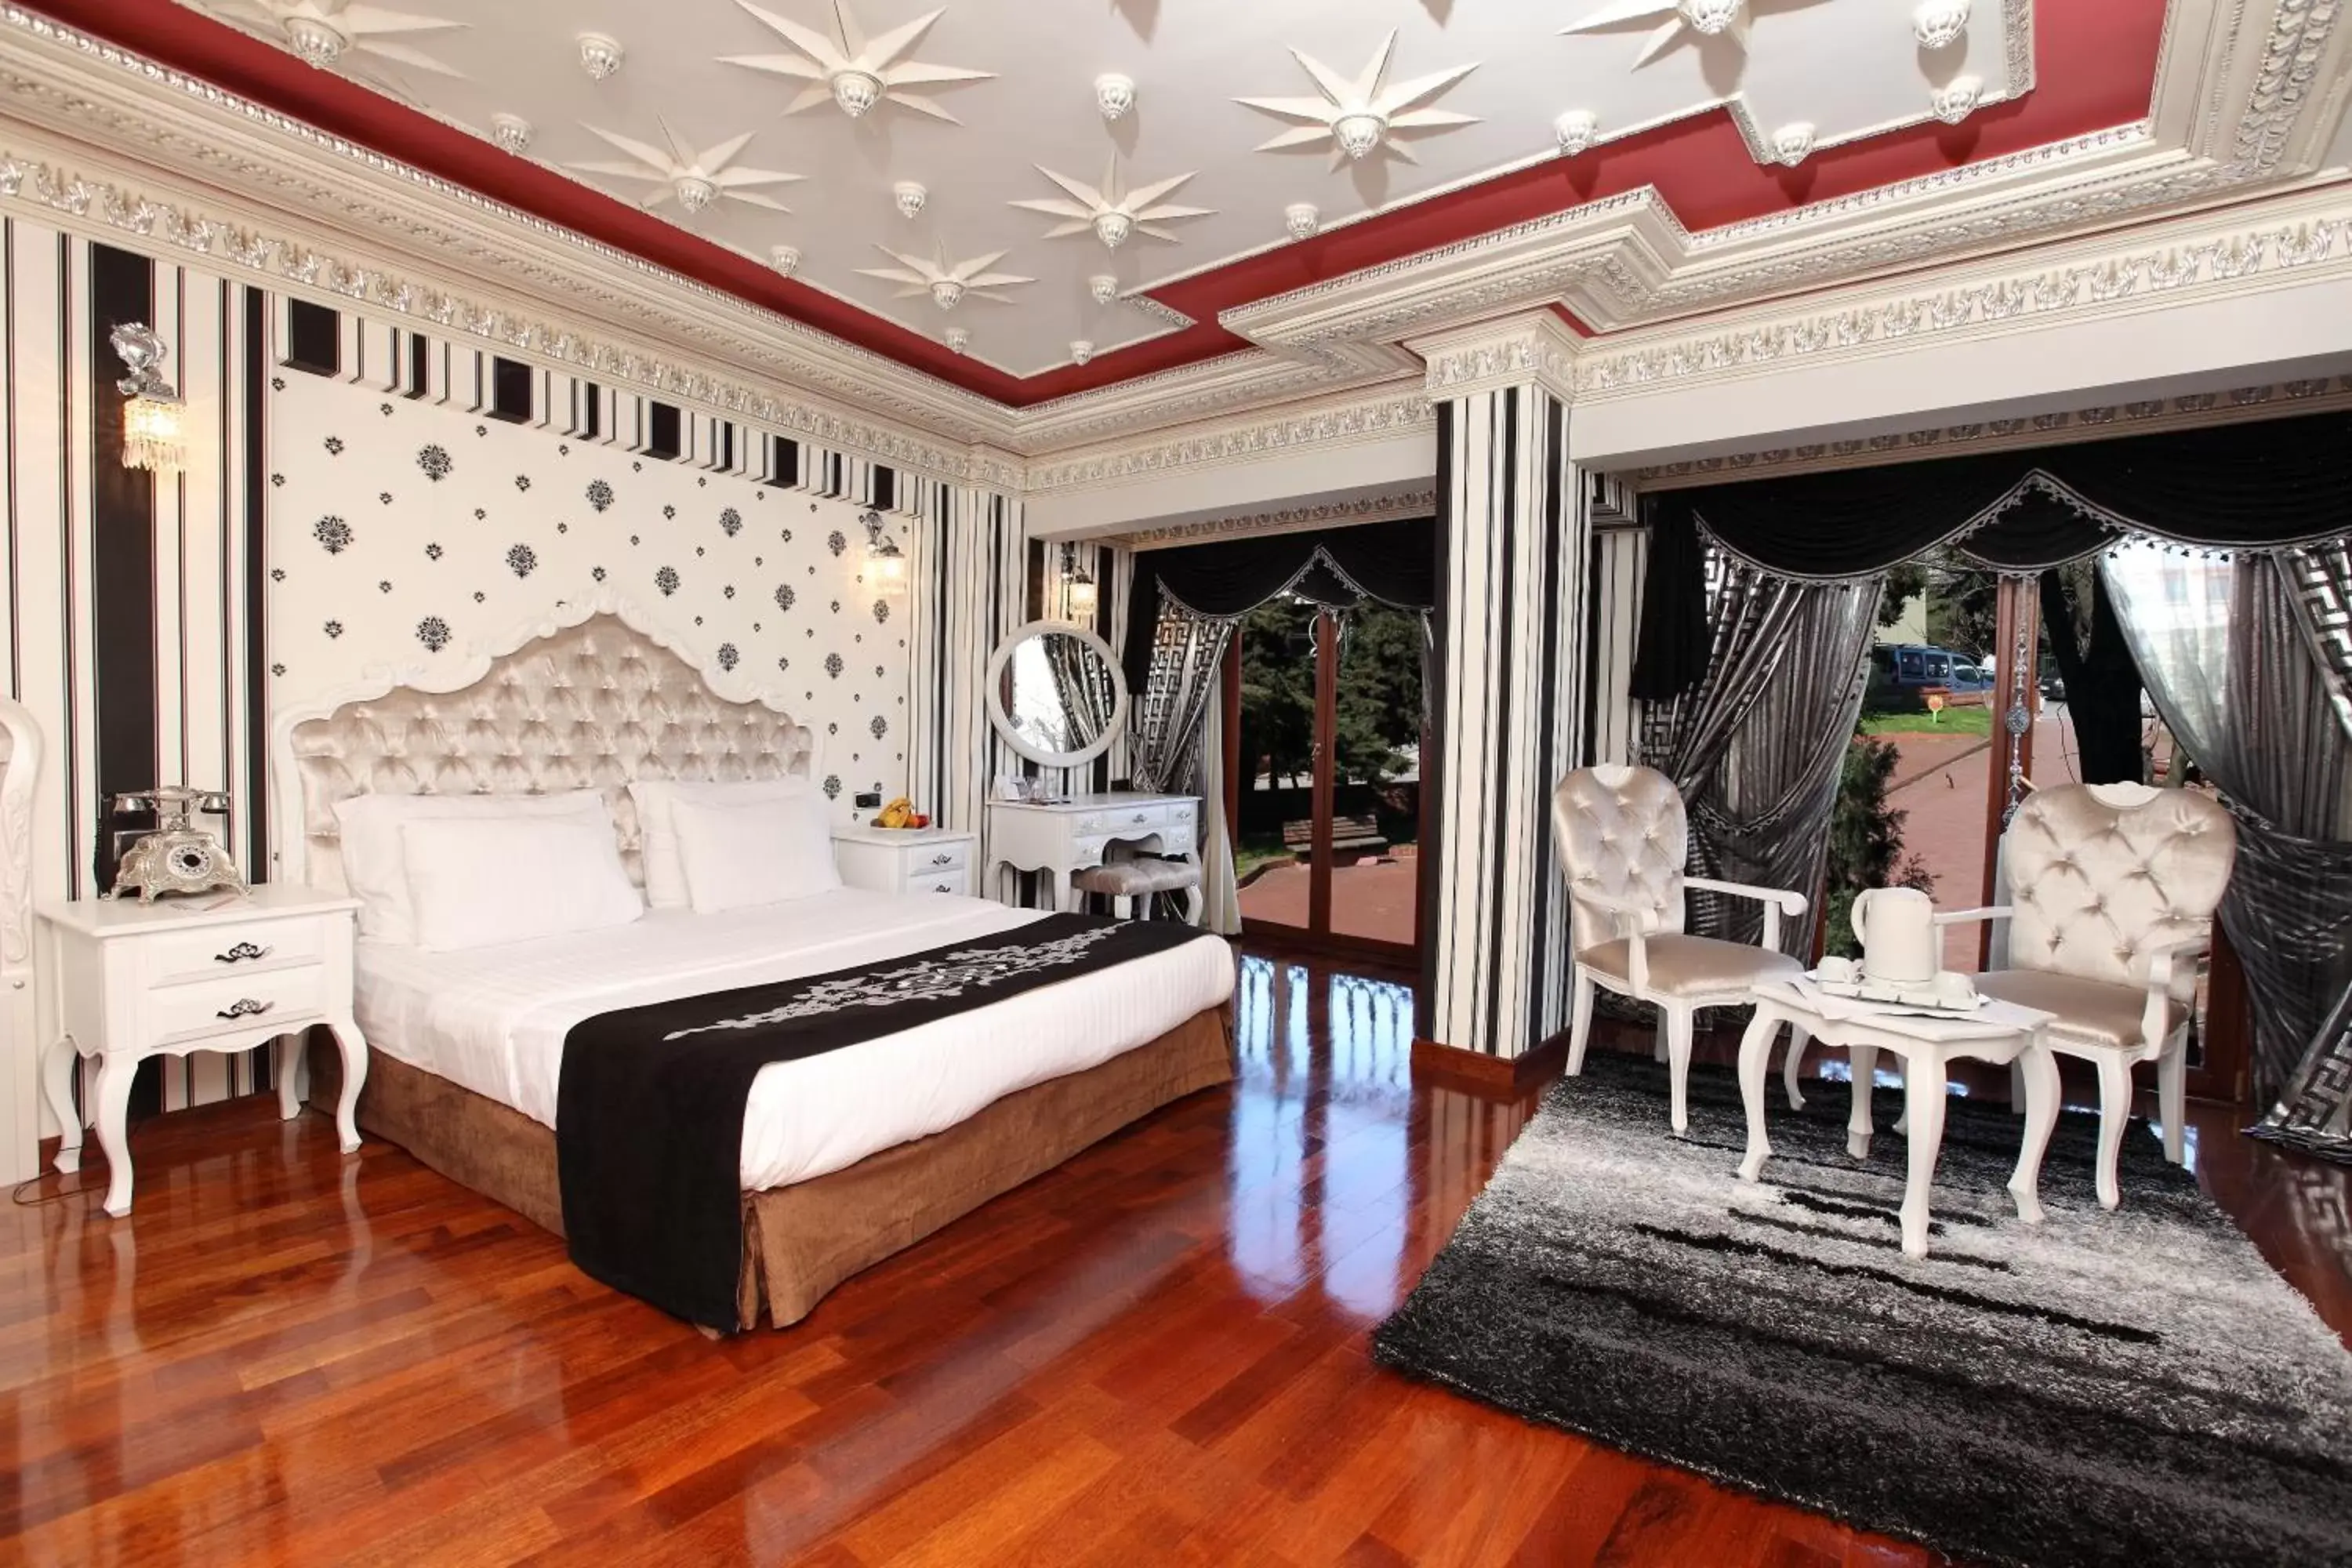 Decorative detail in Deluxe Golden Horn Sultanahmet Hotel